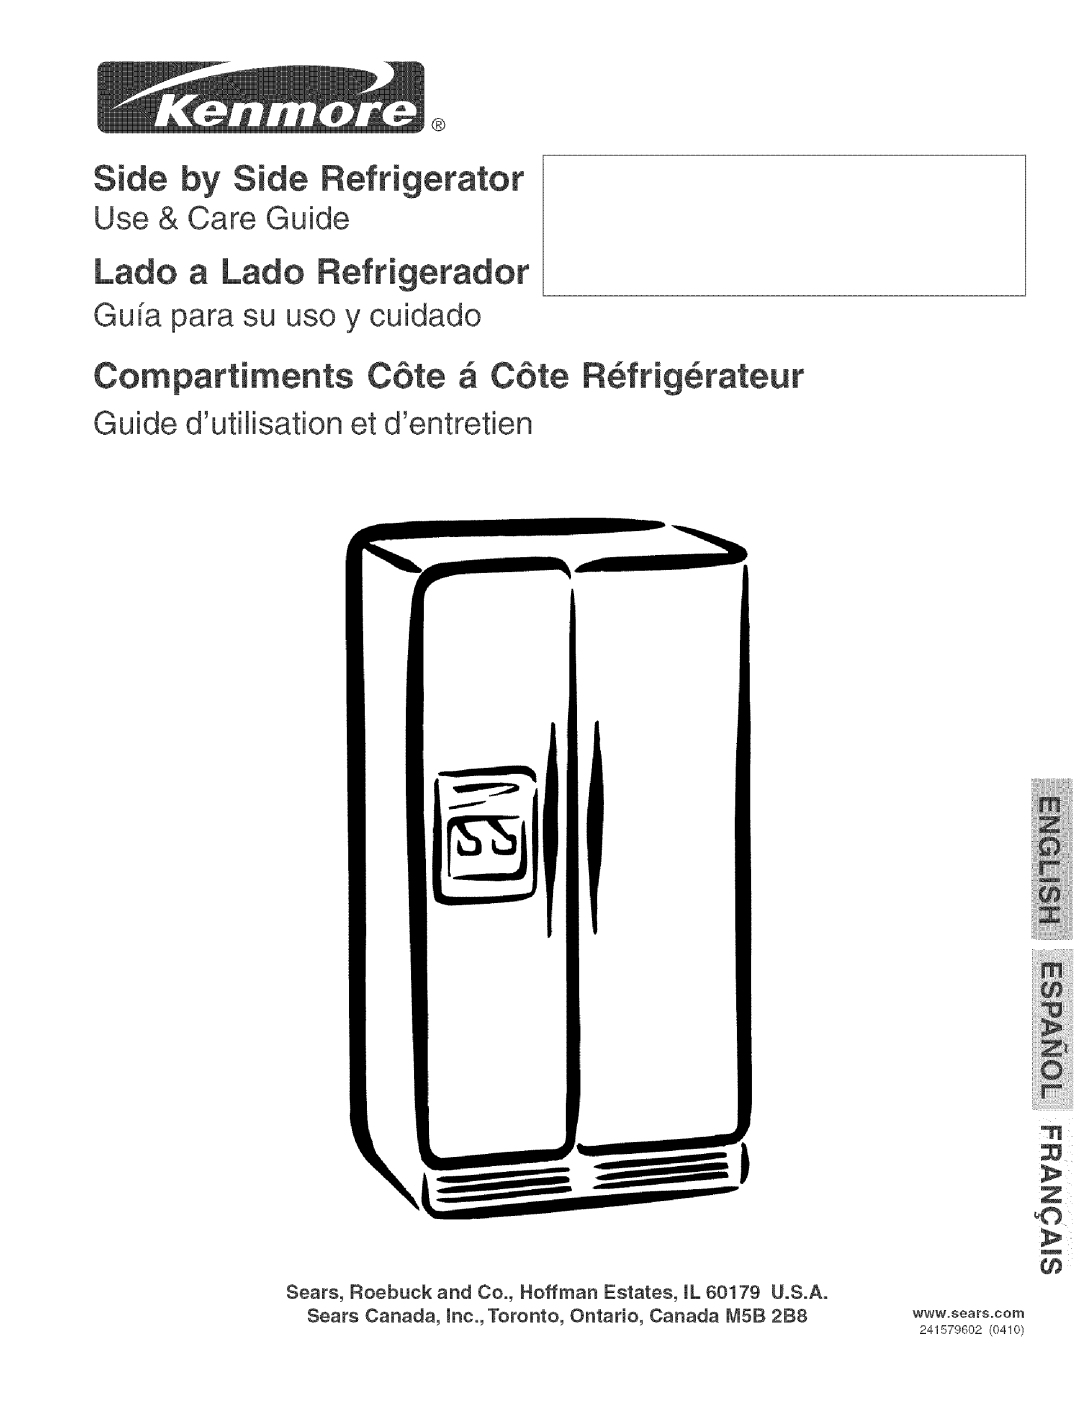 Kenmore 25354663406 manual Side by Side Refrigerator, Lado a Lado Refrigerador, Compartiments C6te _ C6te R_frig_rateur 